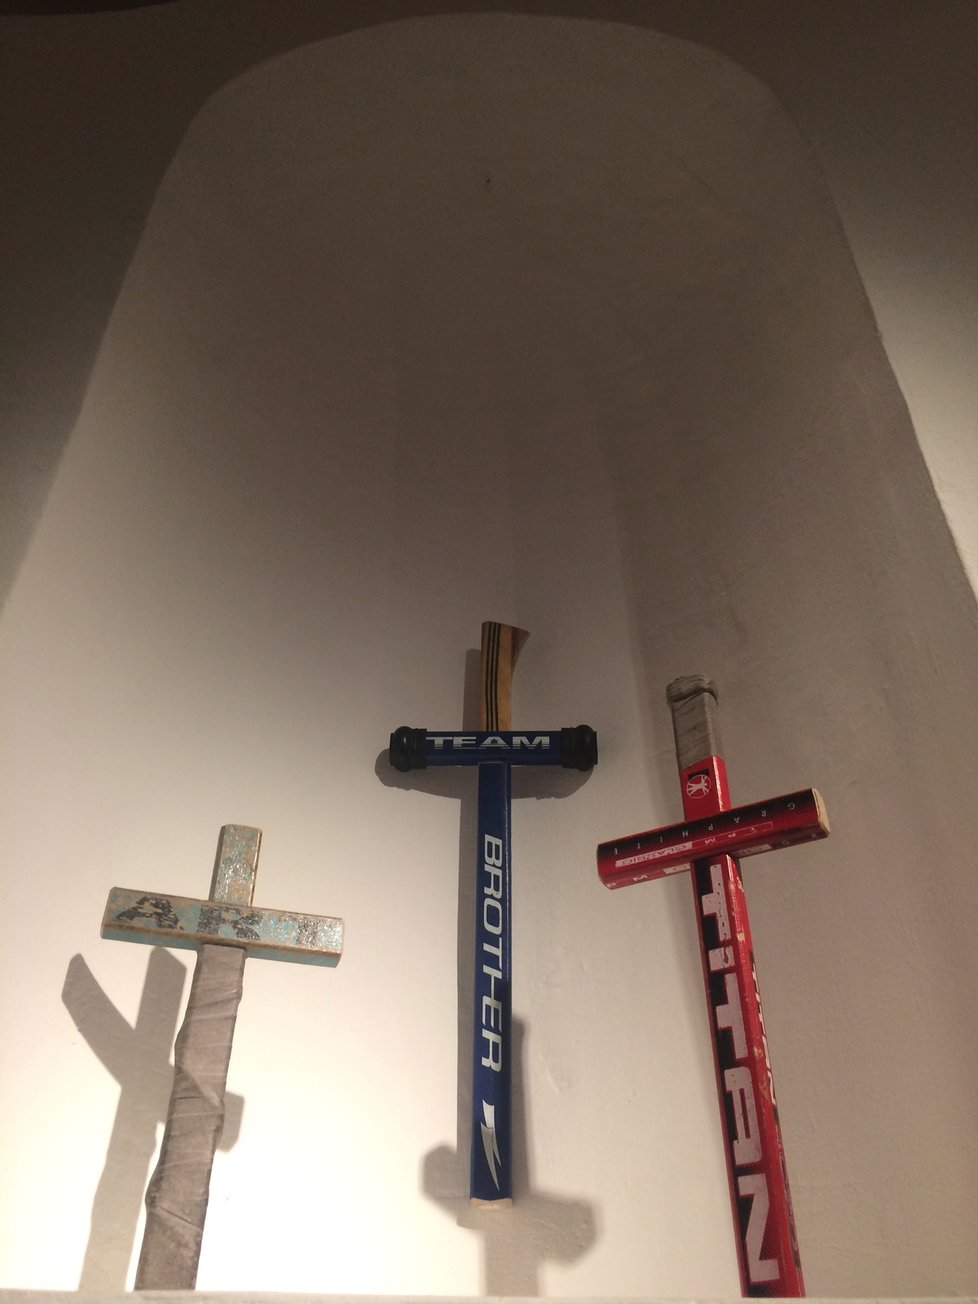 Někdy k umění stačí málo. Třeba vzít hokejku a udělat z ní kříž, tedy náboženský posvátný symbol. Přesně tak i působí ve výklenku, do nějž je instalace usazena.